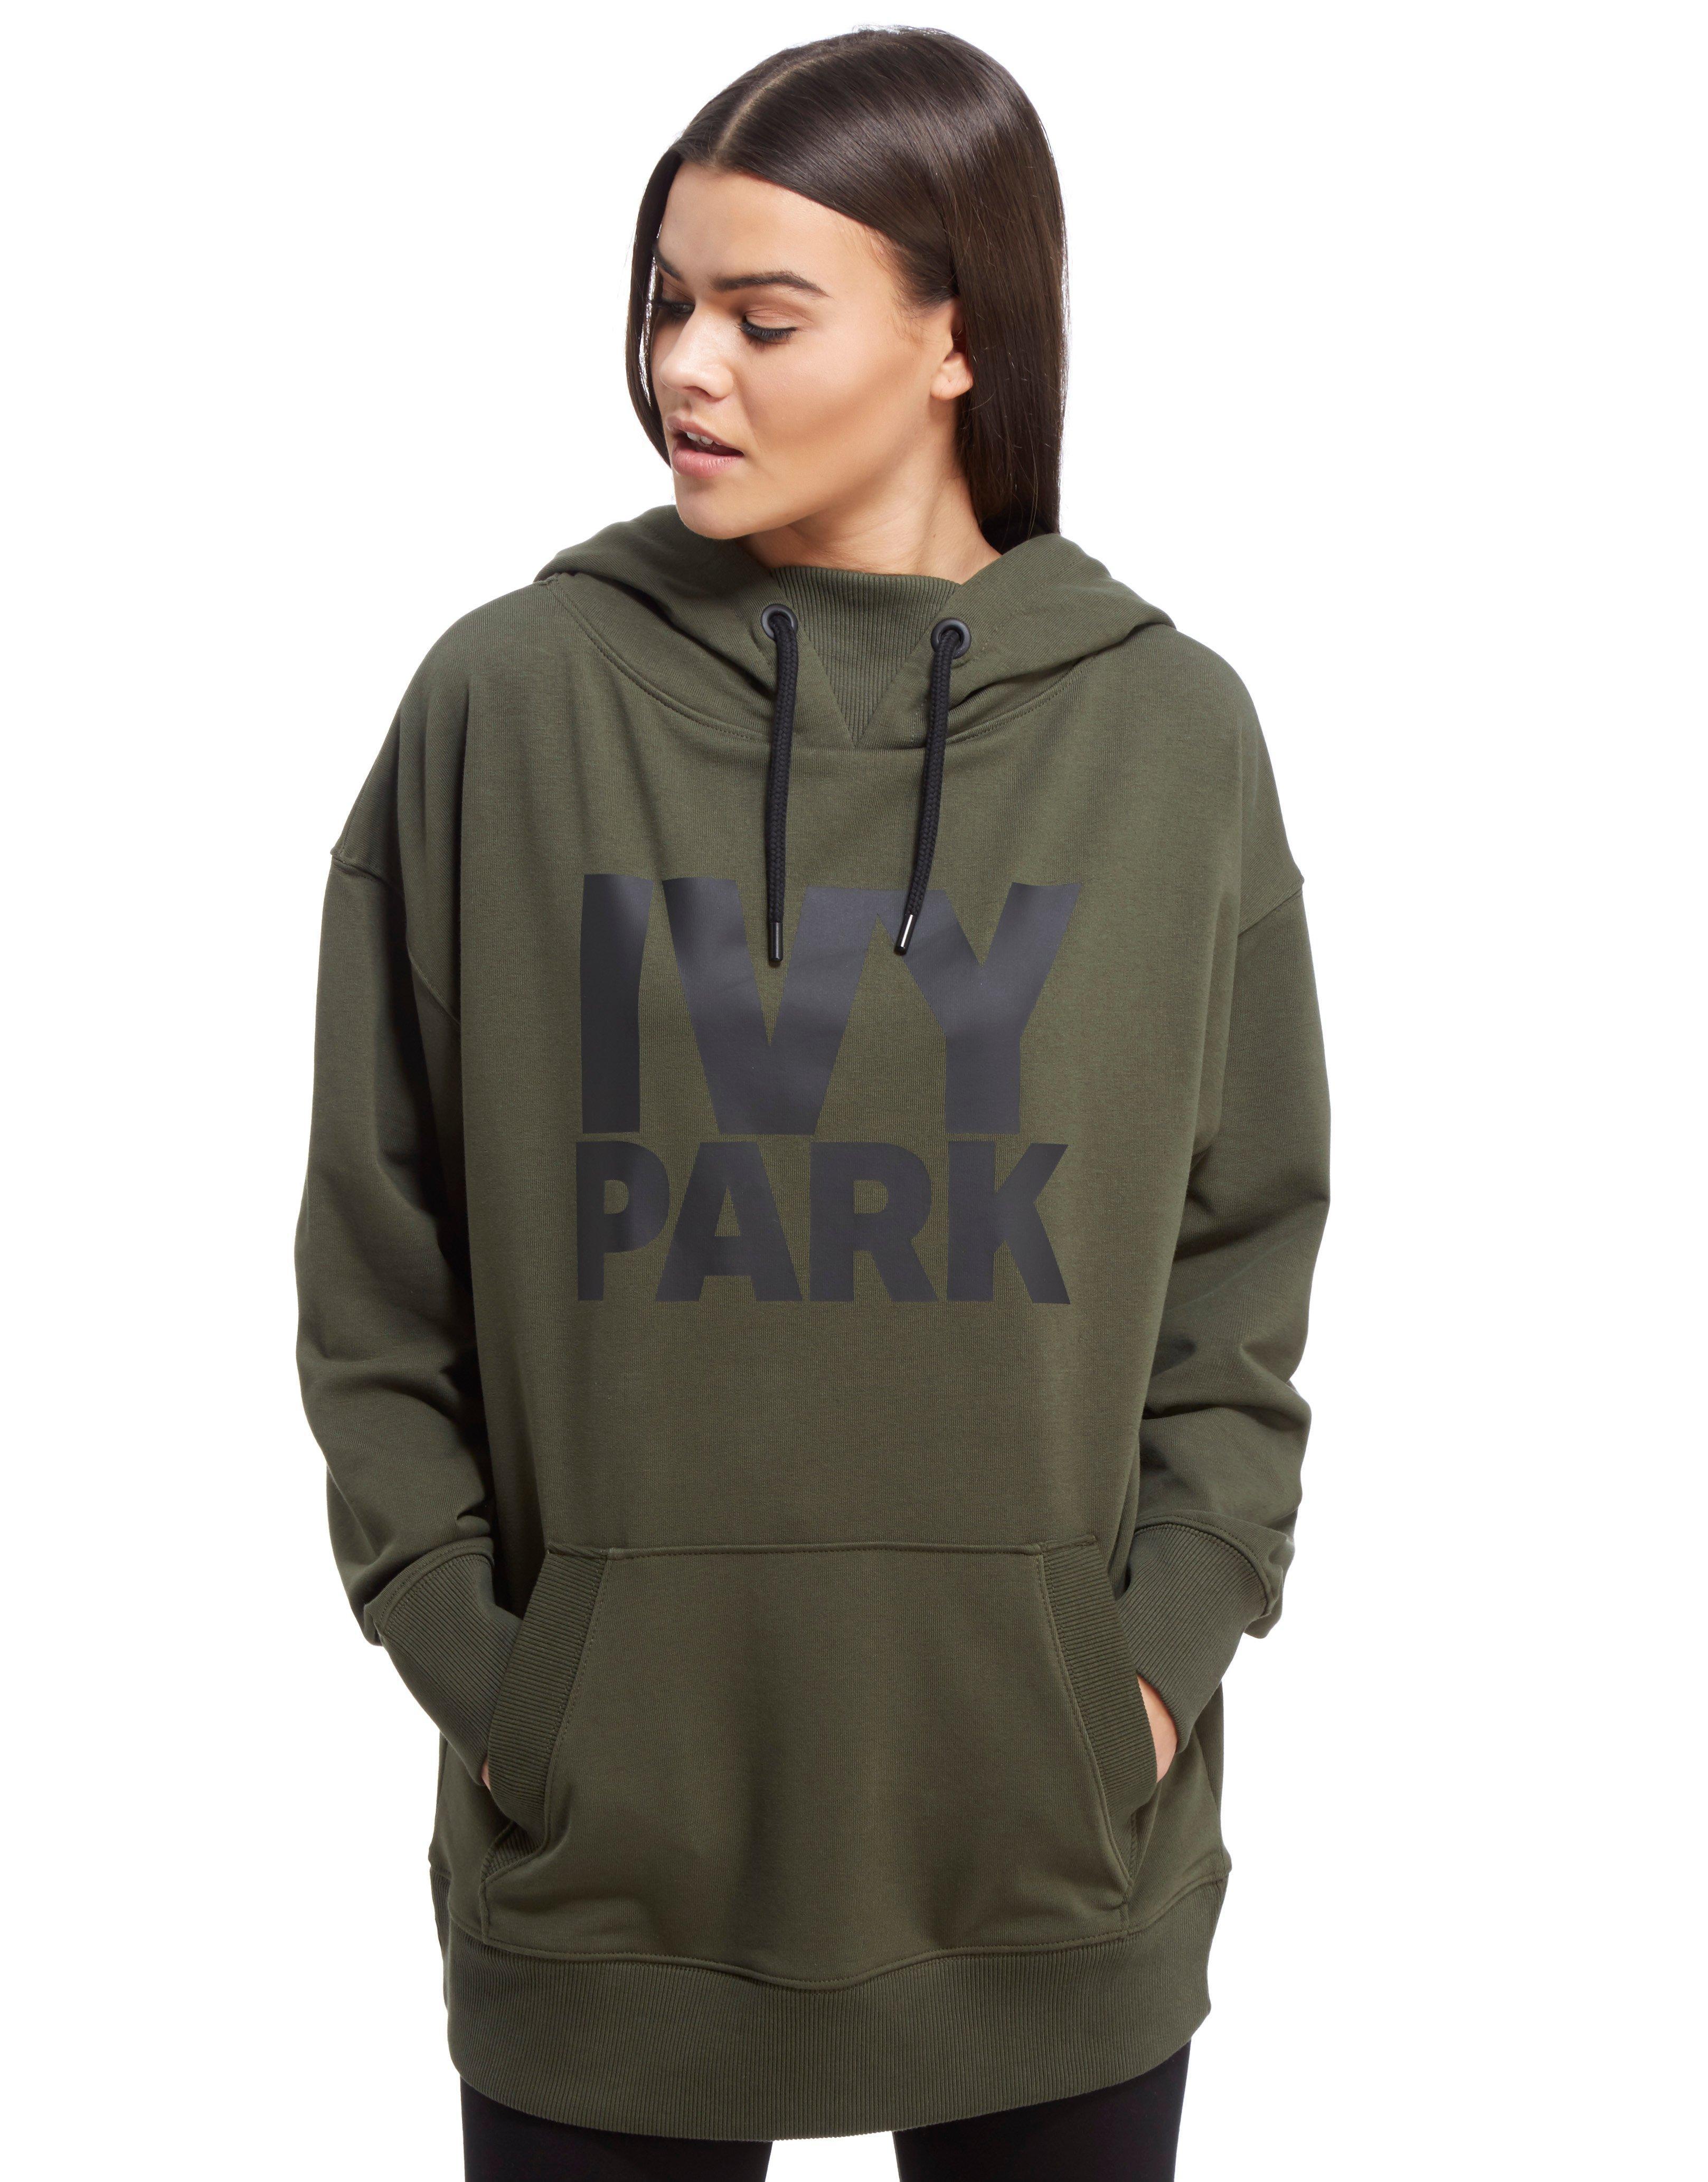 ivy park green hoodie